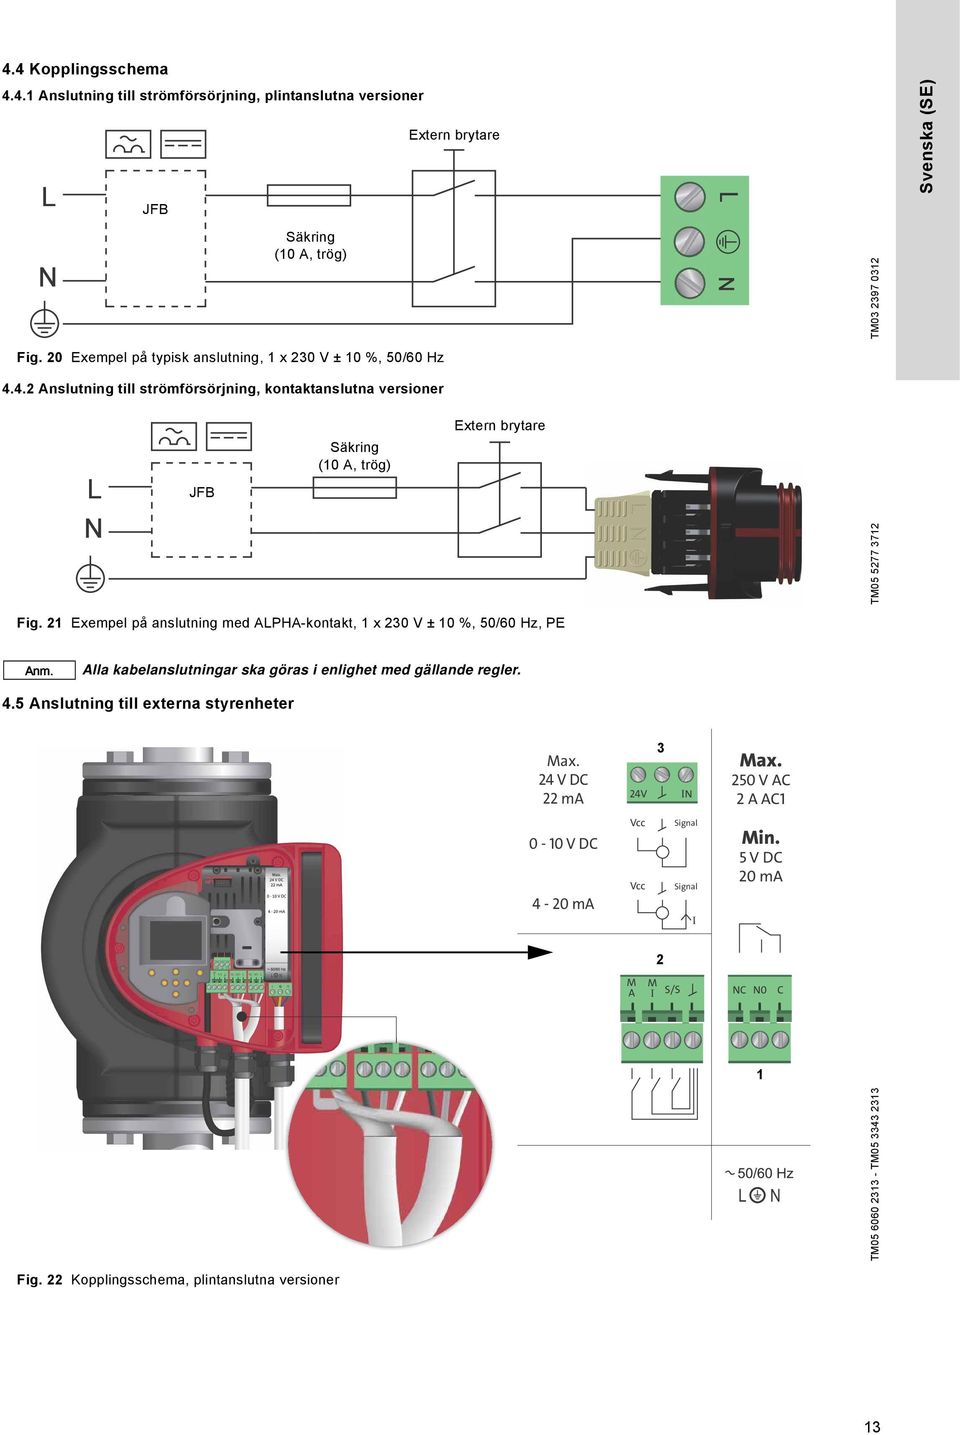 21 Exempel på anslutning med ALPHA-kontakt, 1 x 230 V ± 10 %, 50/60 Hz, PE Alla kabelanslutningar ska göras i enlighet med gällande regler. 4.5 Anslutning till externa styrenheter Max.